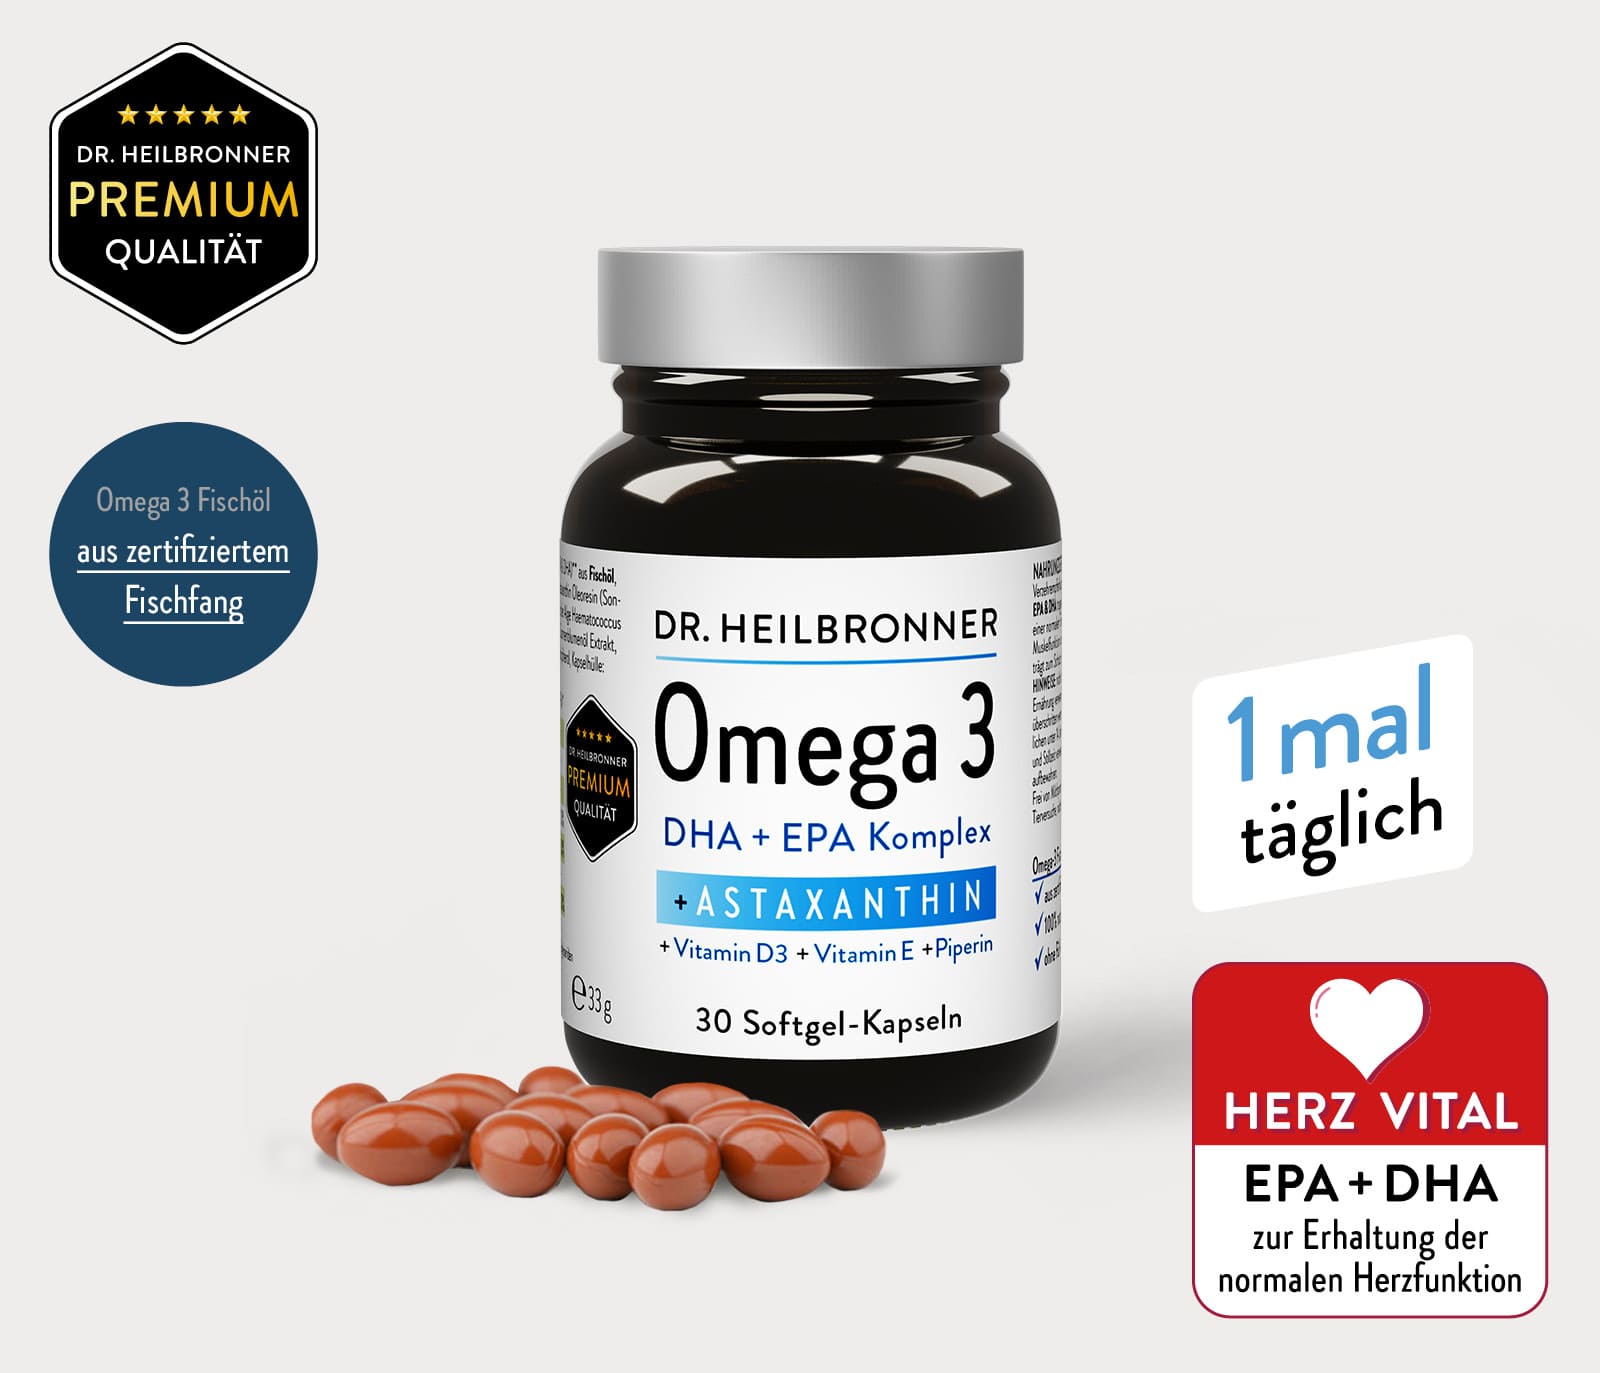 OMEGA 3 + Astaxanthin + Vitamin D3 + E Kapseln